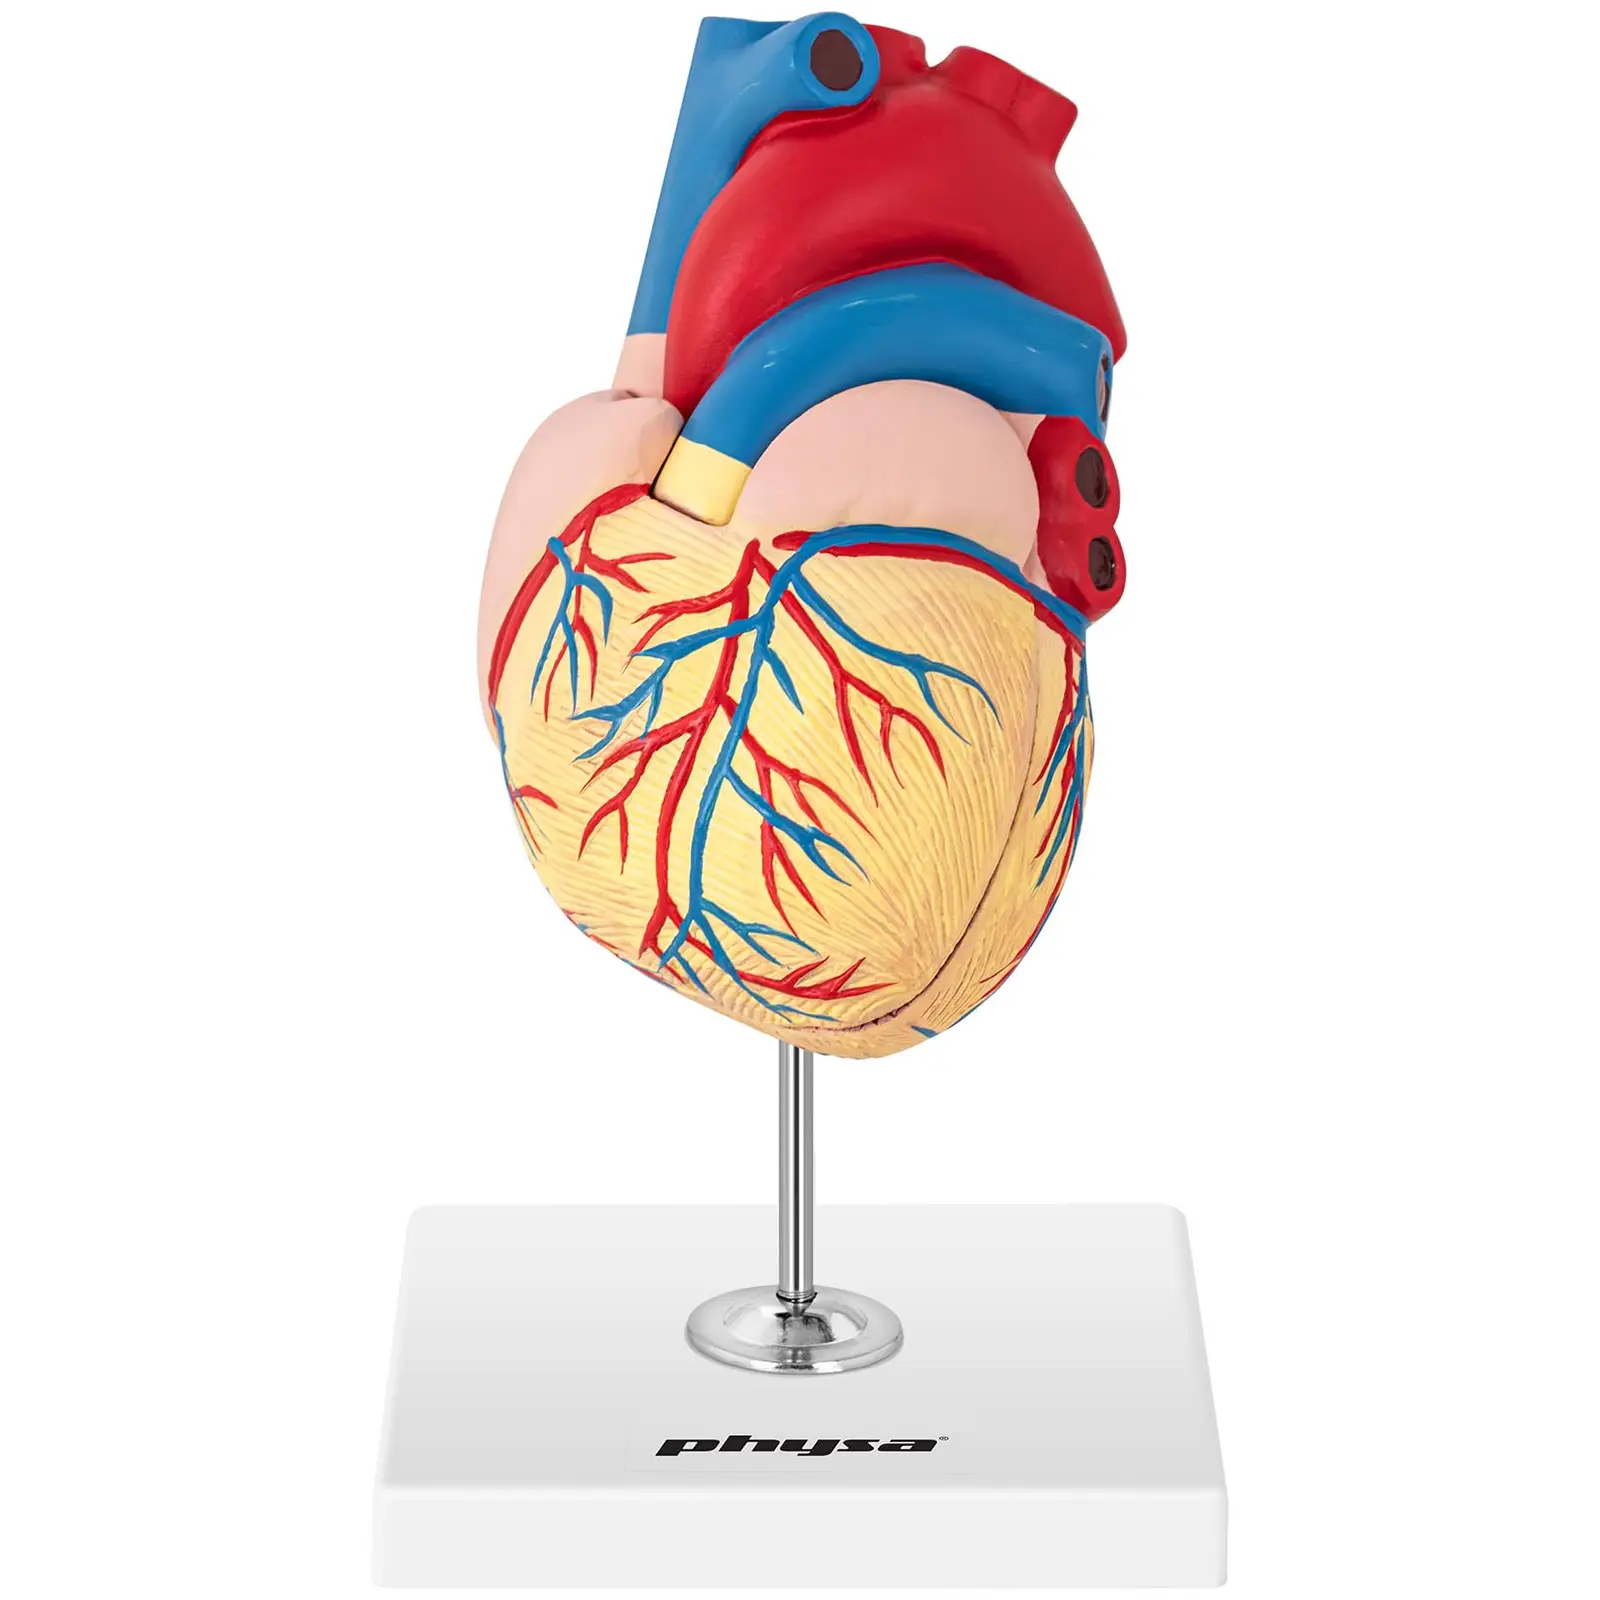 Herzmodell - in 2 Teile zerlegbar - Originalgröße